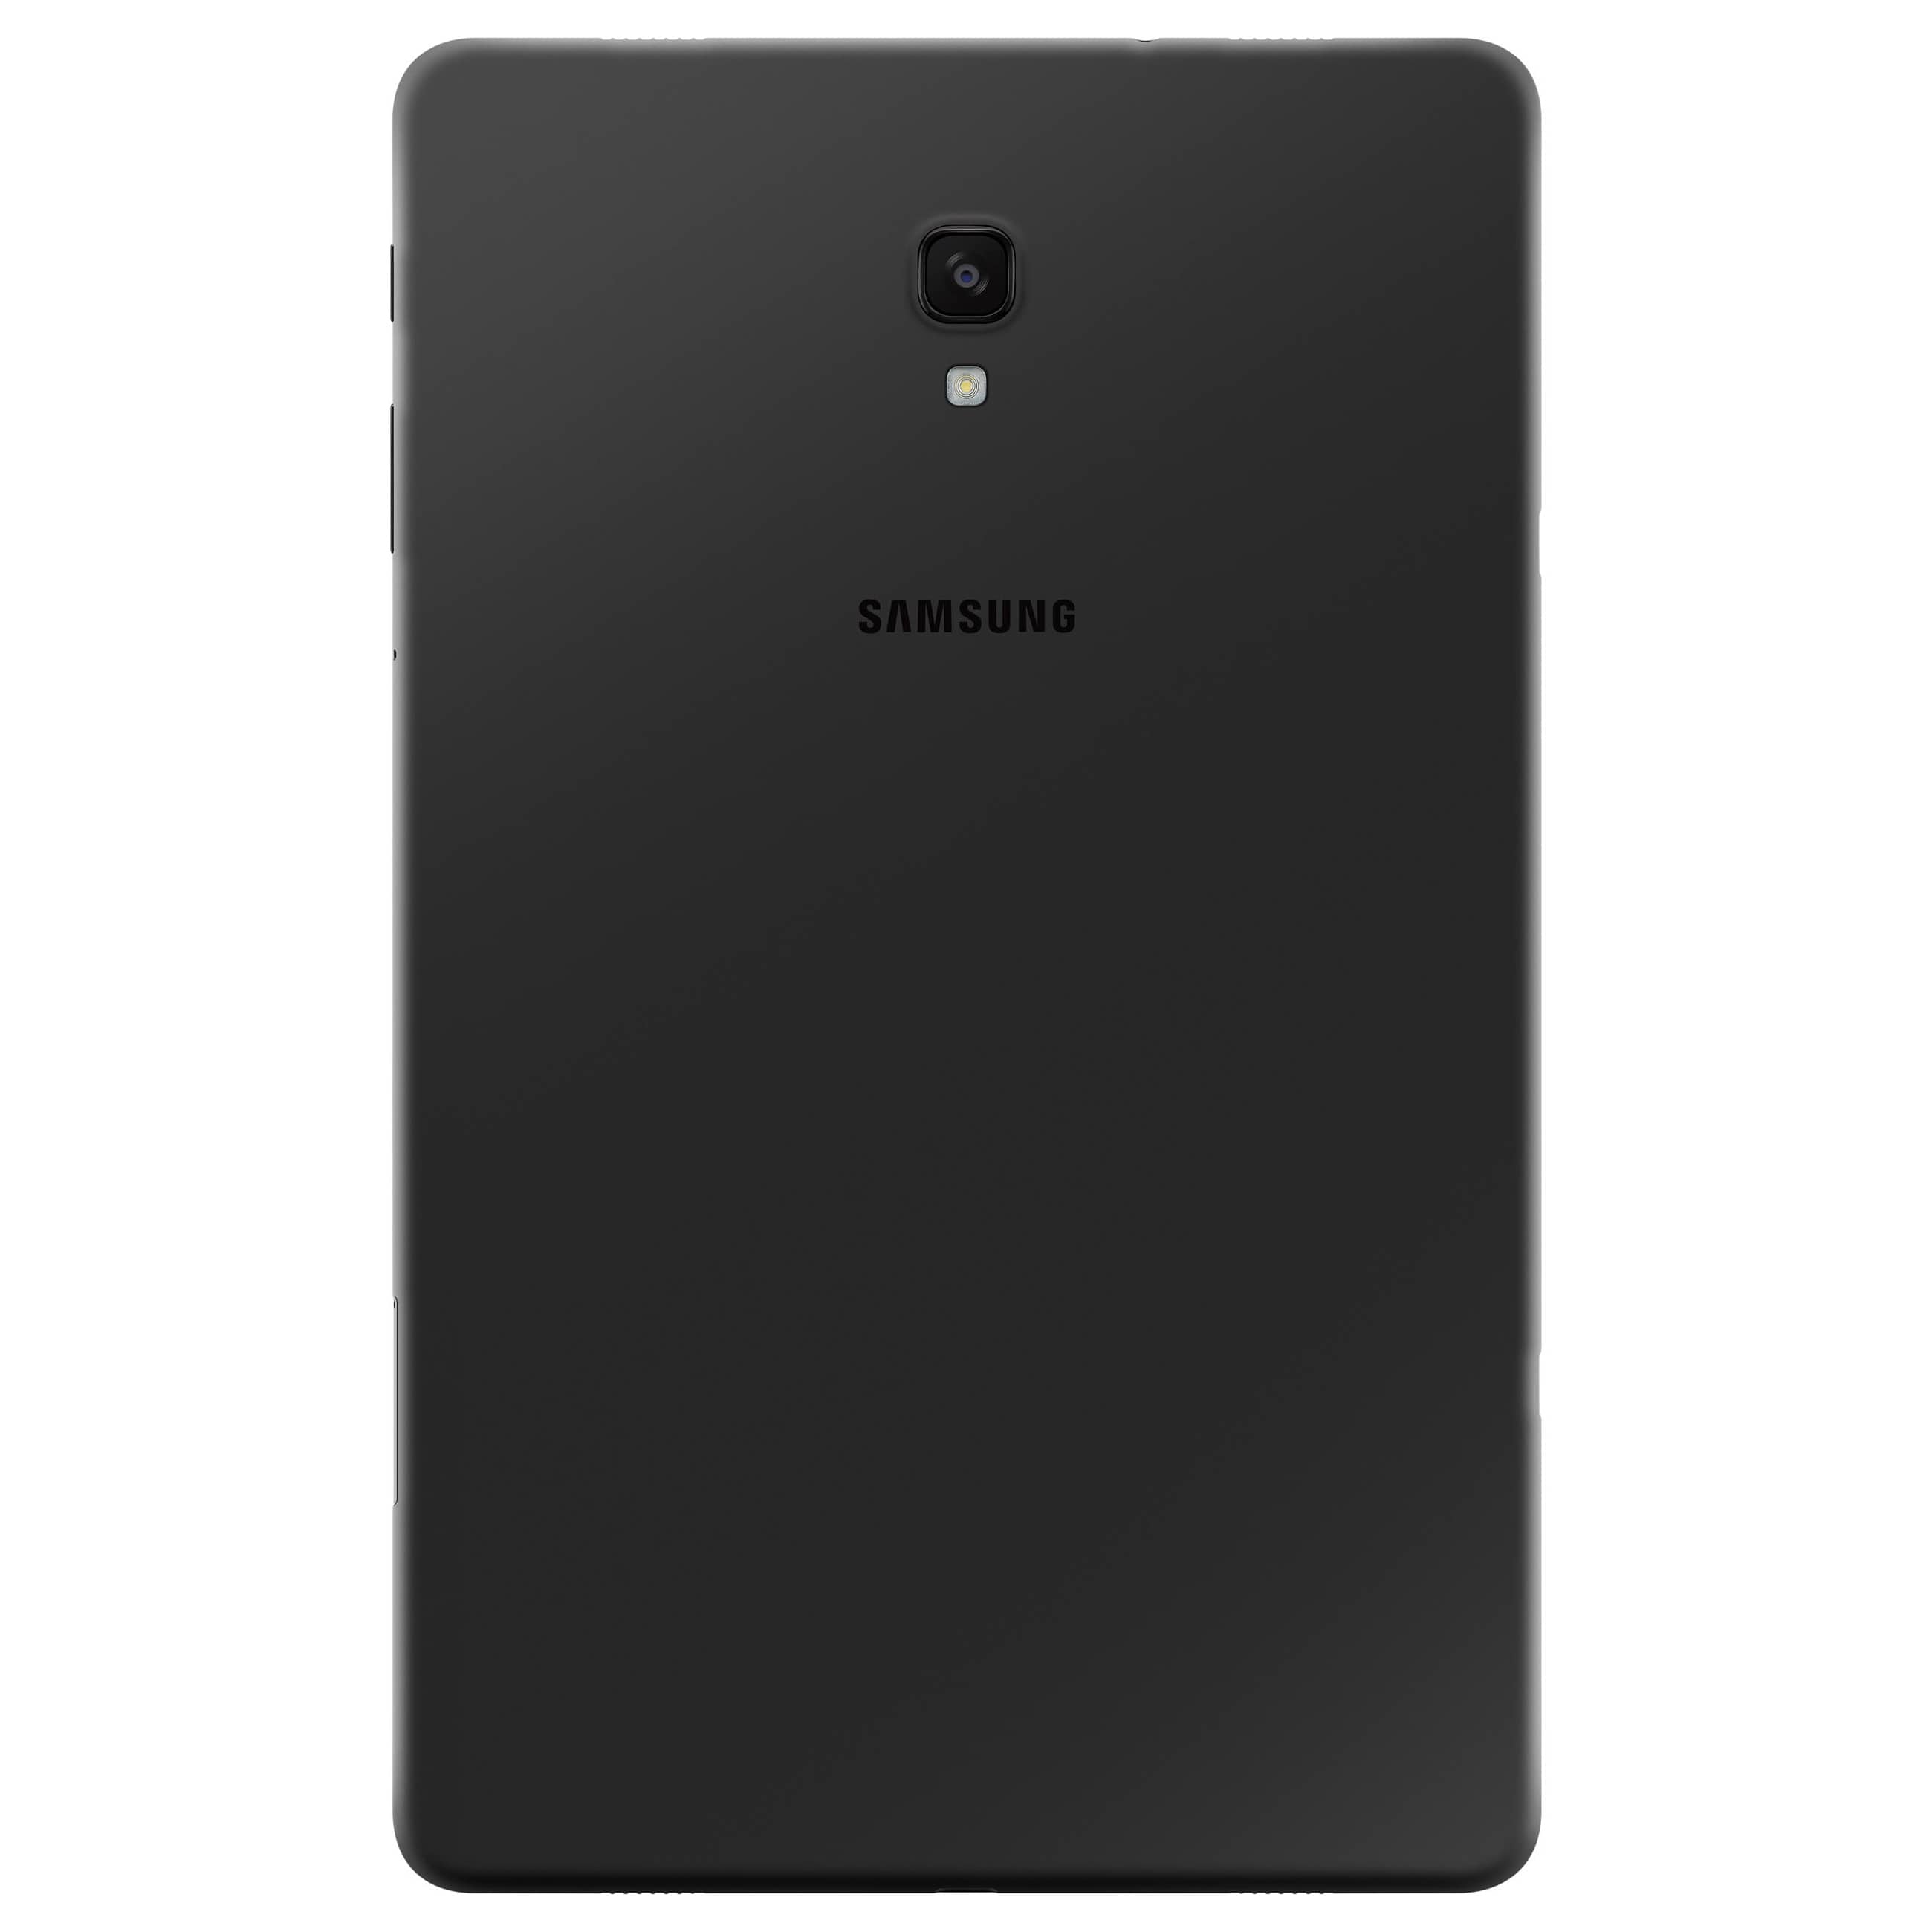 Samsung Galaxy Tab A (2018) - 32 GB - Black - LTE 4G